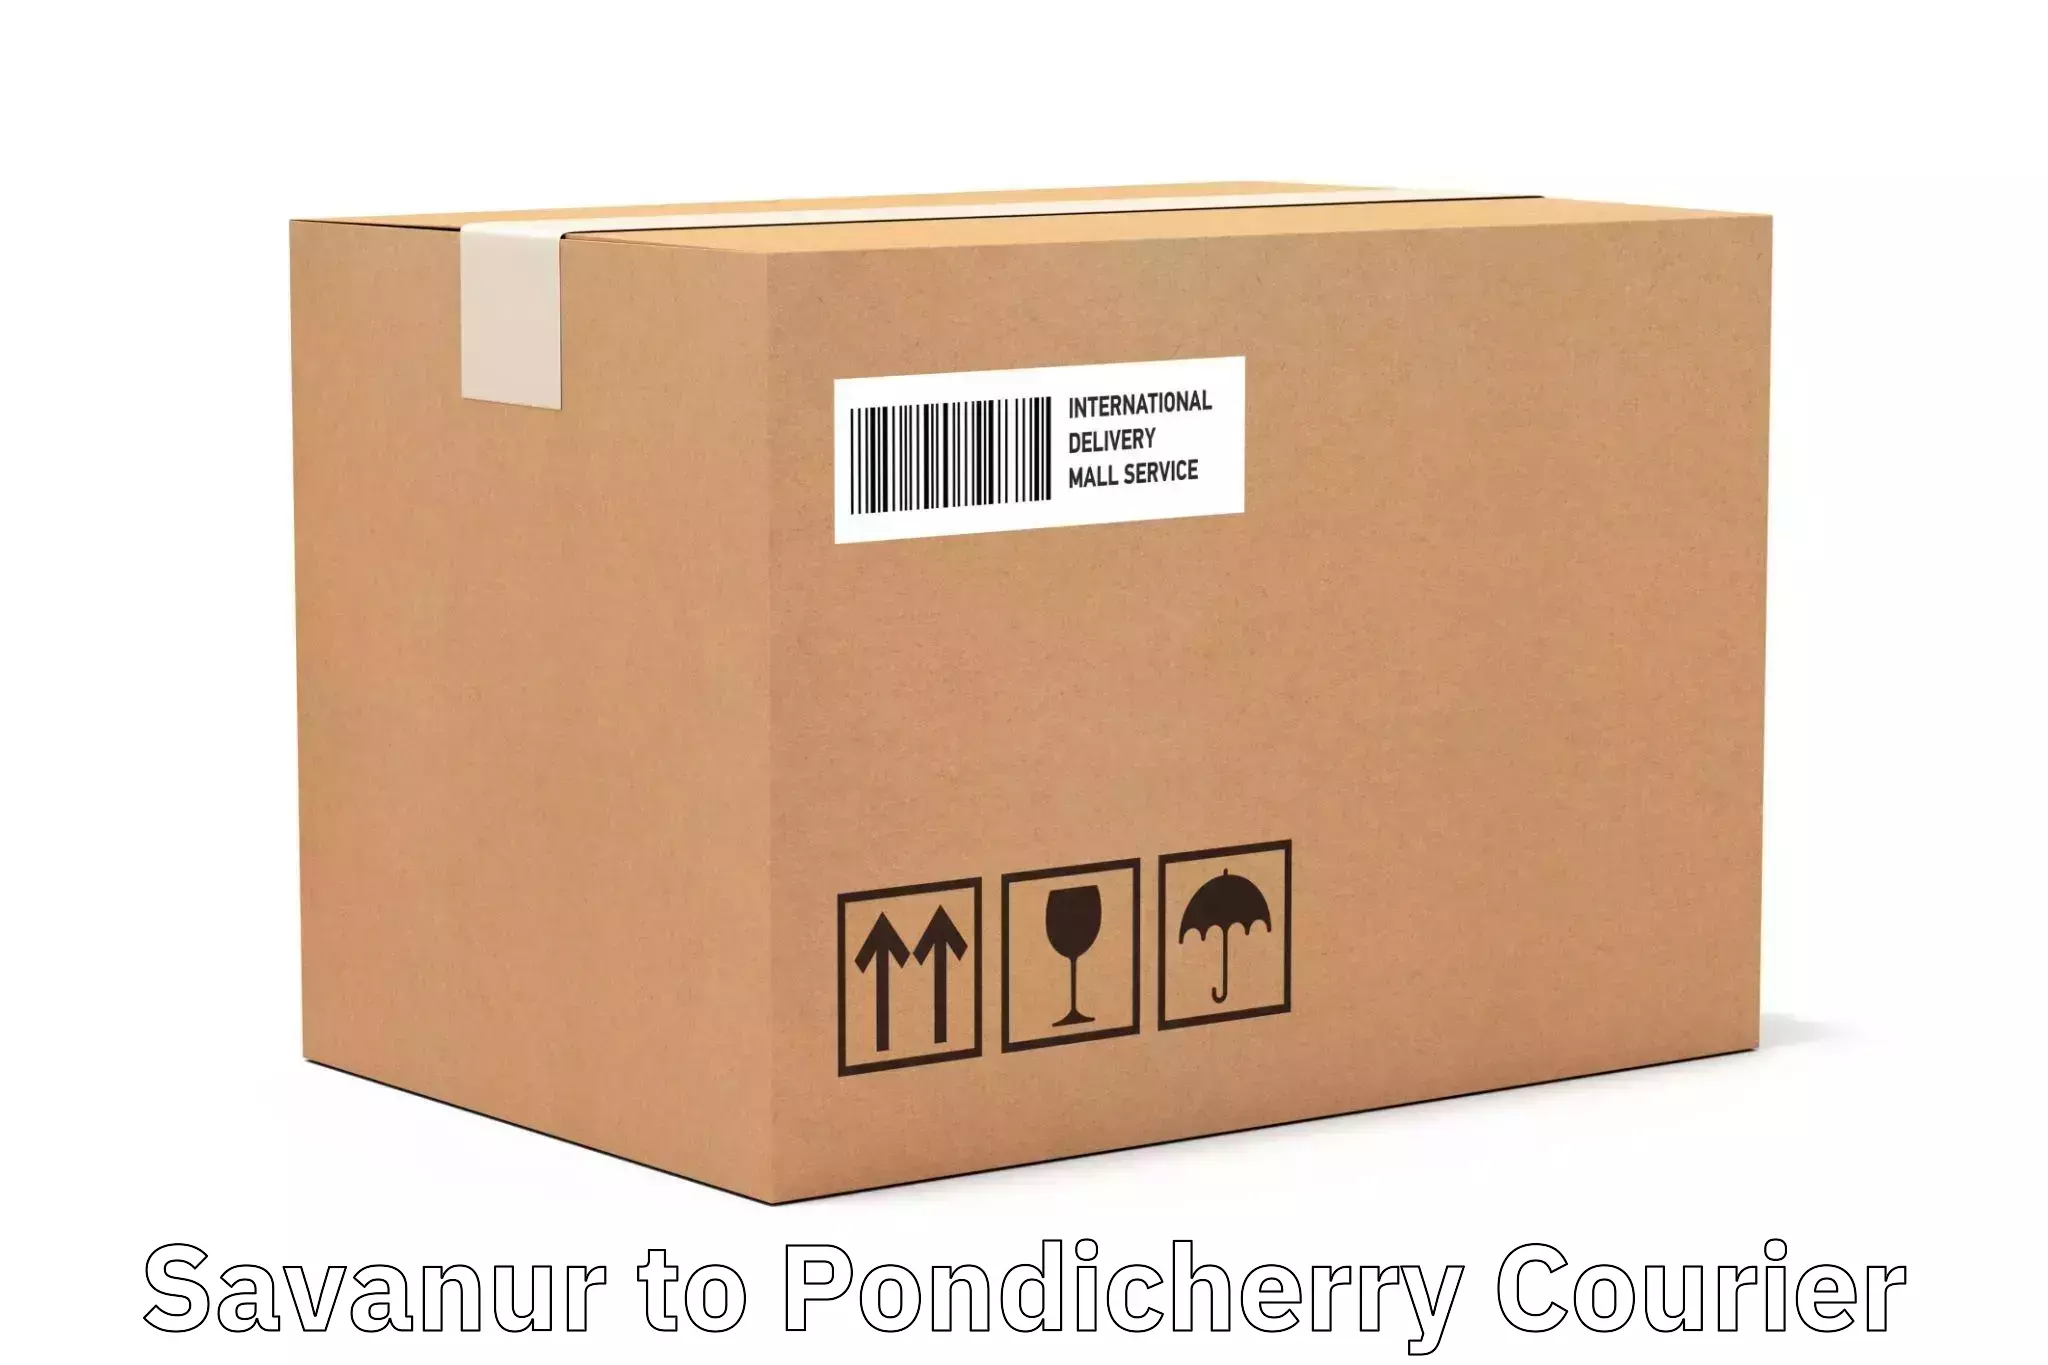 Special handling courier Savanur to Pondicherry